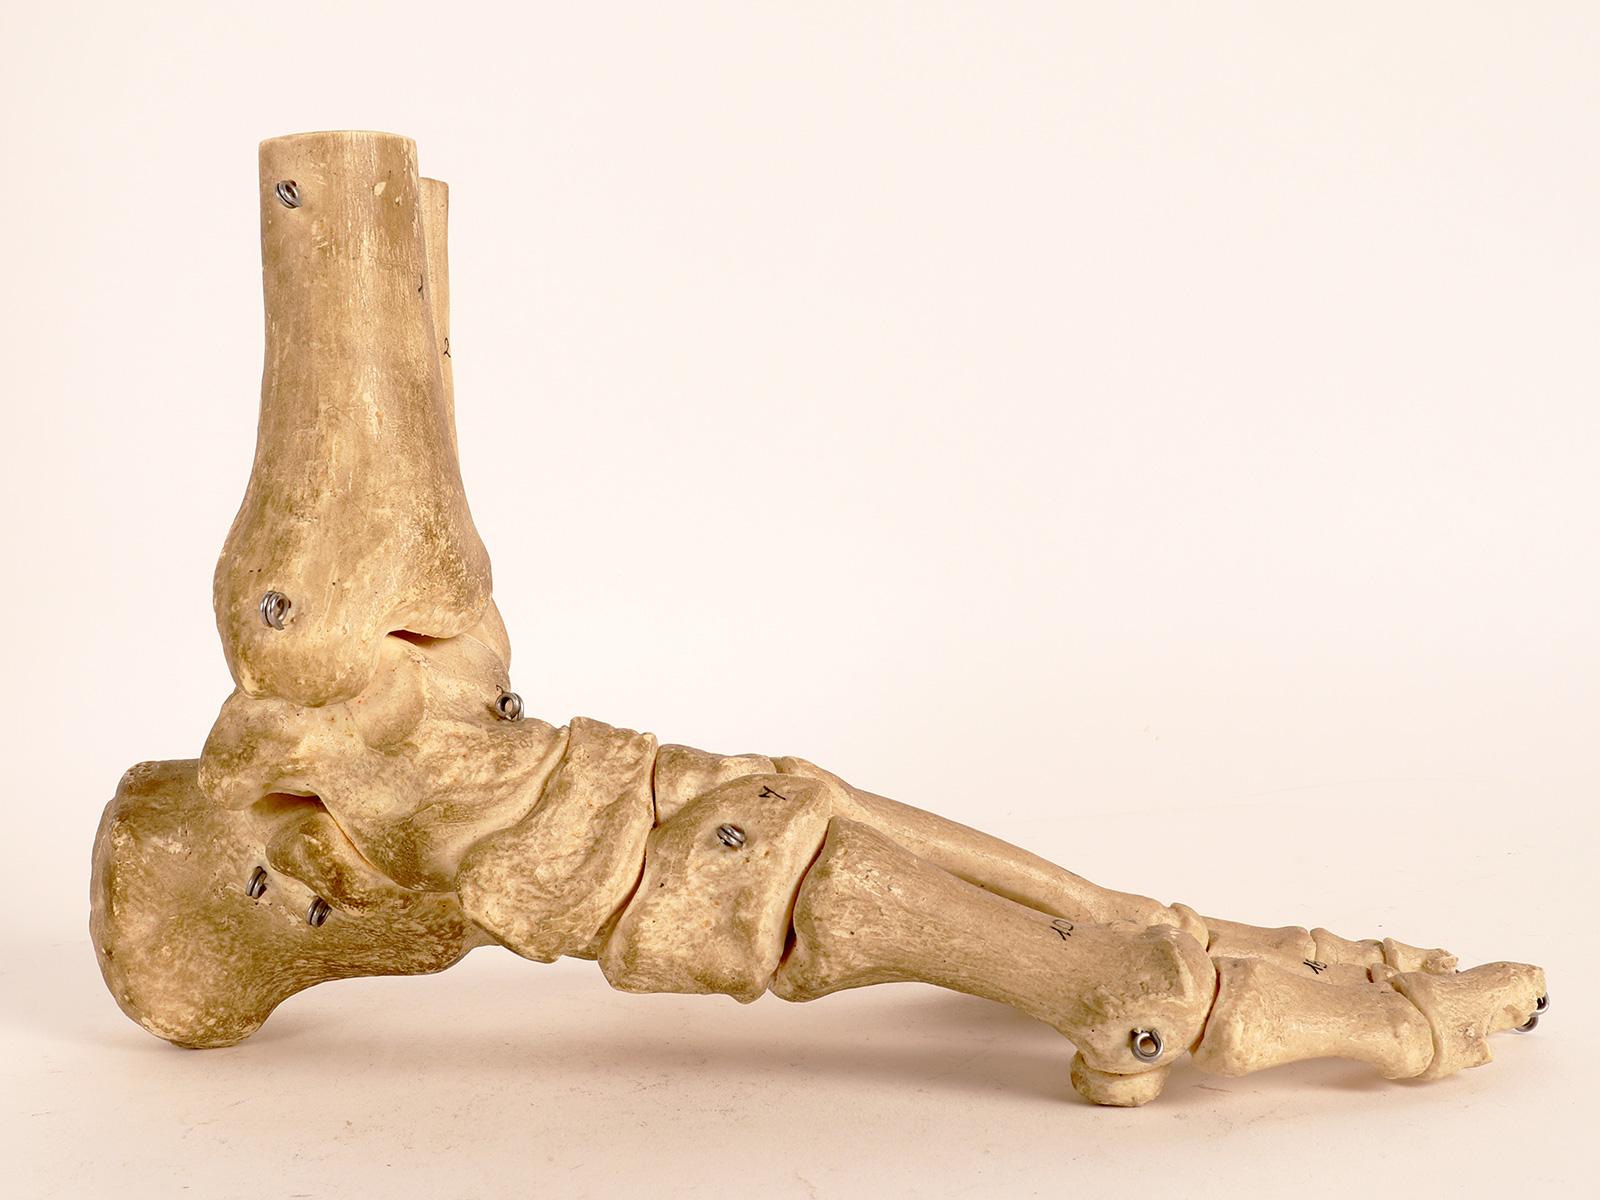 Modèle anatomique représentant la partie squelettique d'un pied, fabriqué par Somso, Sonenberg. Allemagne, vers 1970.